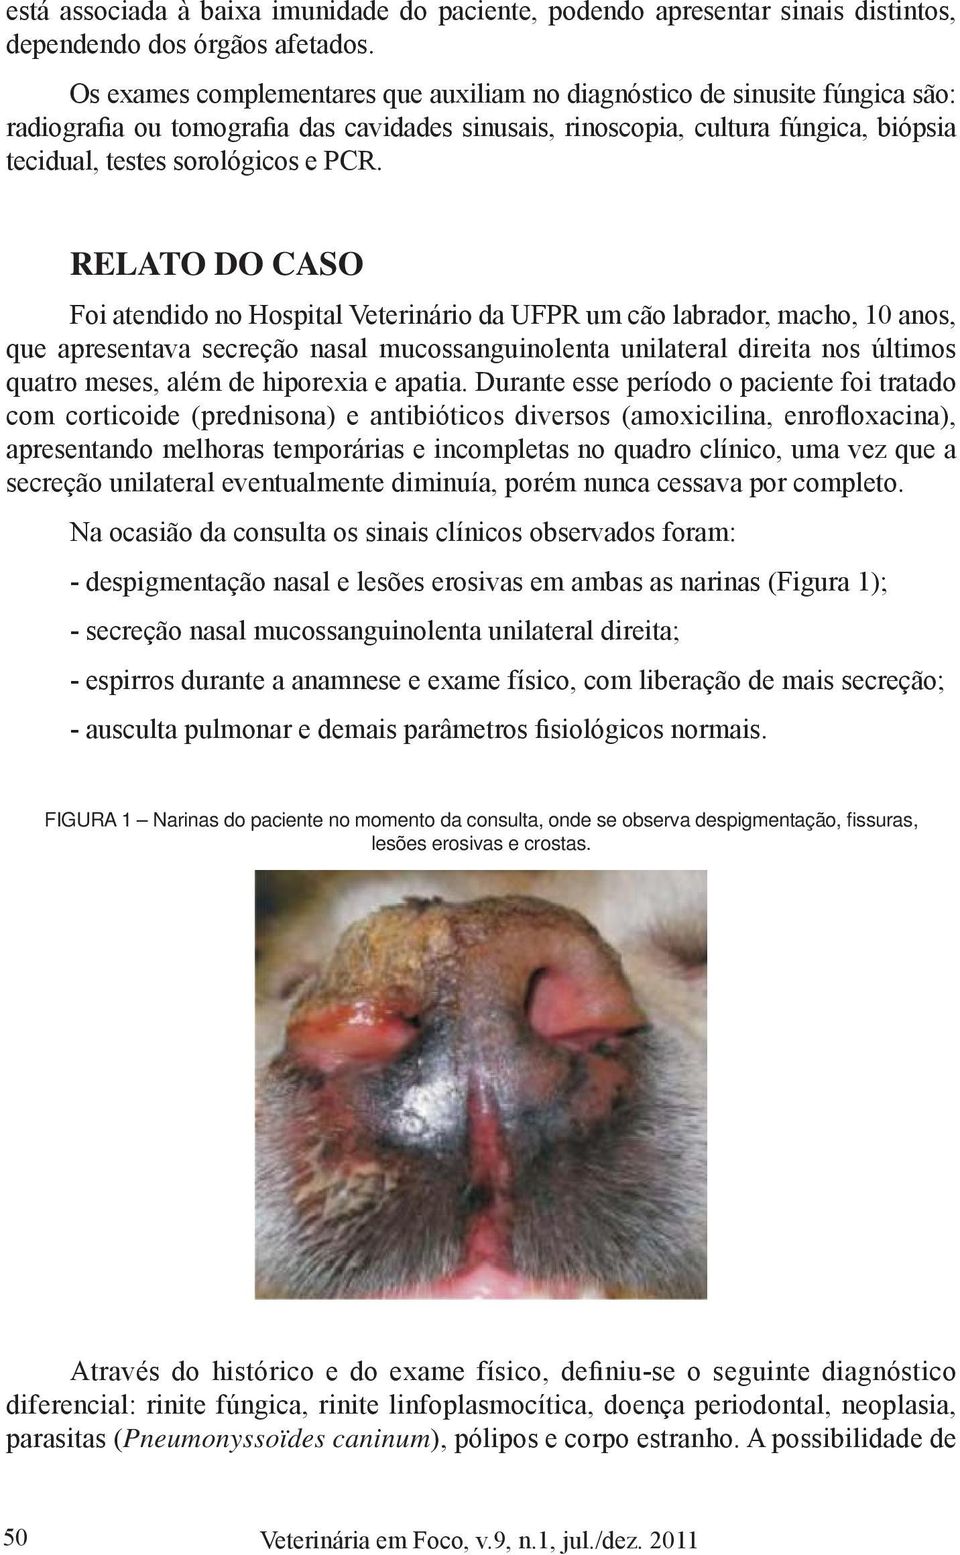 RELATO DO CASO Foi atendido no Hospital Veterinário da UFPR um cão labrador, macho, 10 anos, que apresentava secreção nasal mucossanguinolenta unilateral direita nos últimos quatro meses, além de